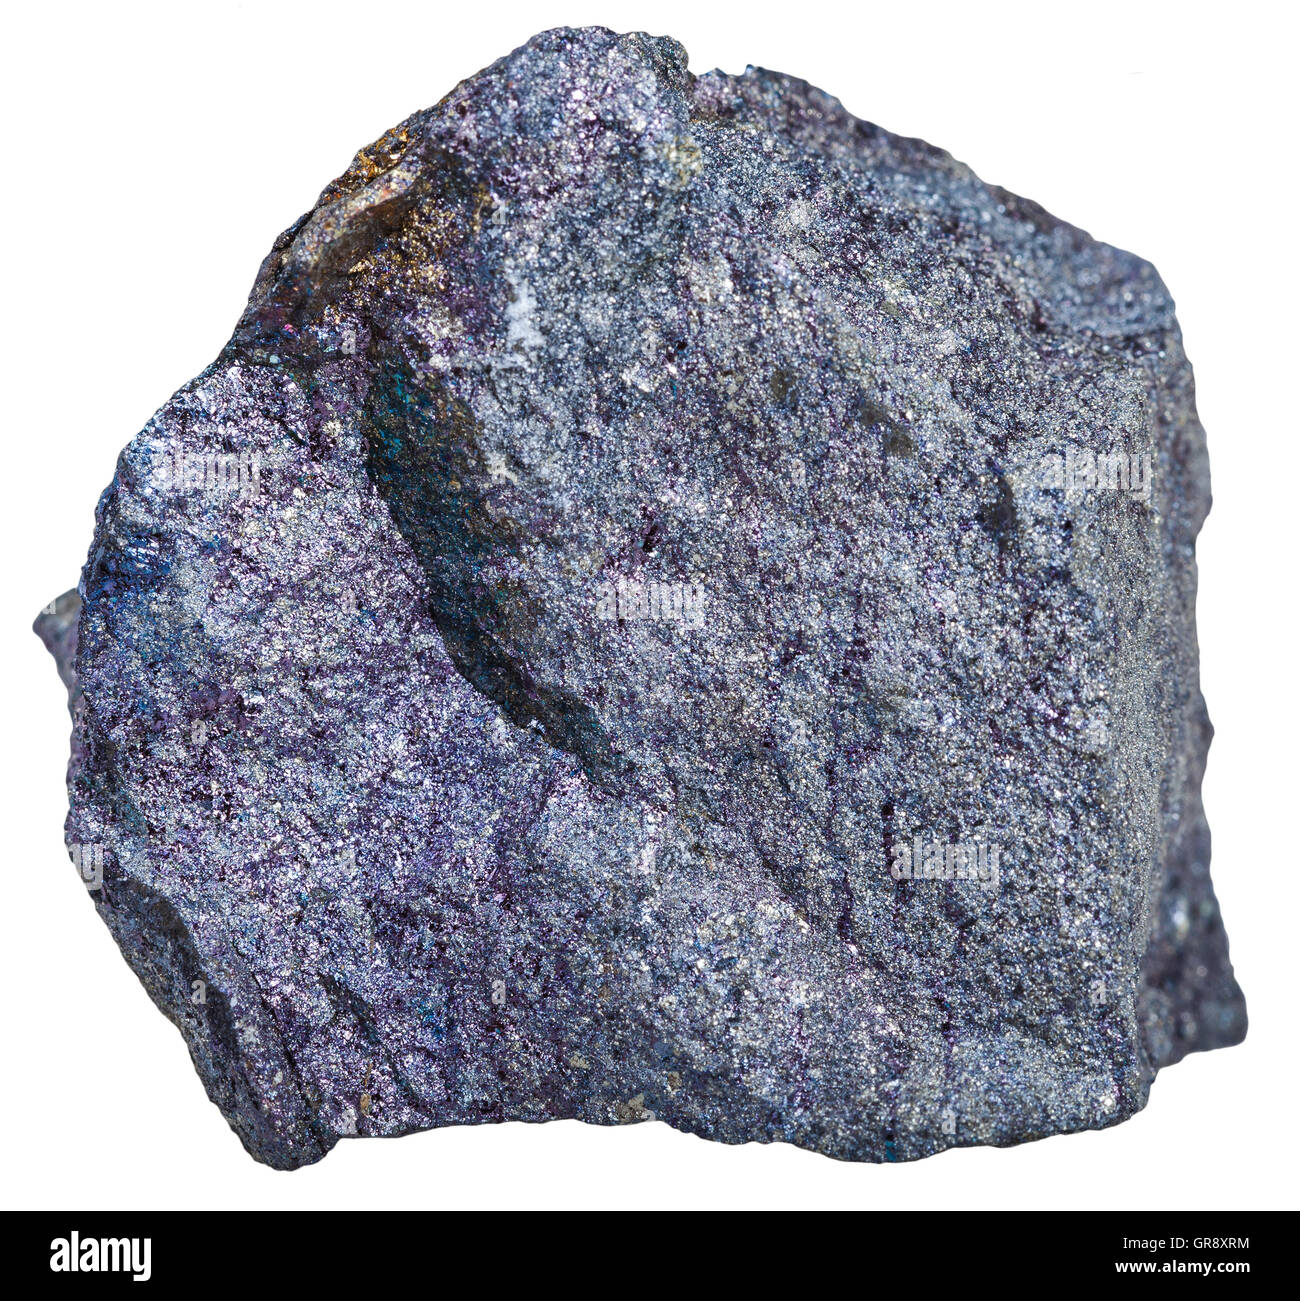 Makroaufnahmen von Bodenschätzen - Bornit (Pfau Erz, Pfau Kupfer) Probe isoliert auf weißem Hintergrund Stockfoto